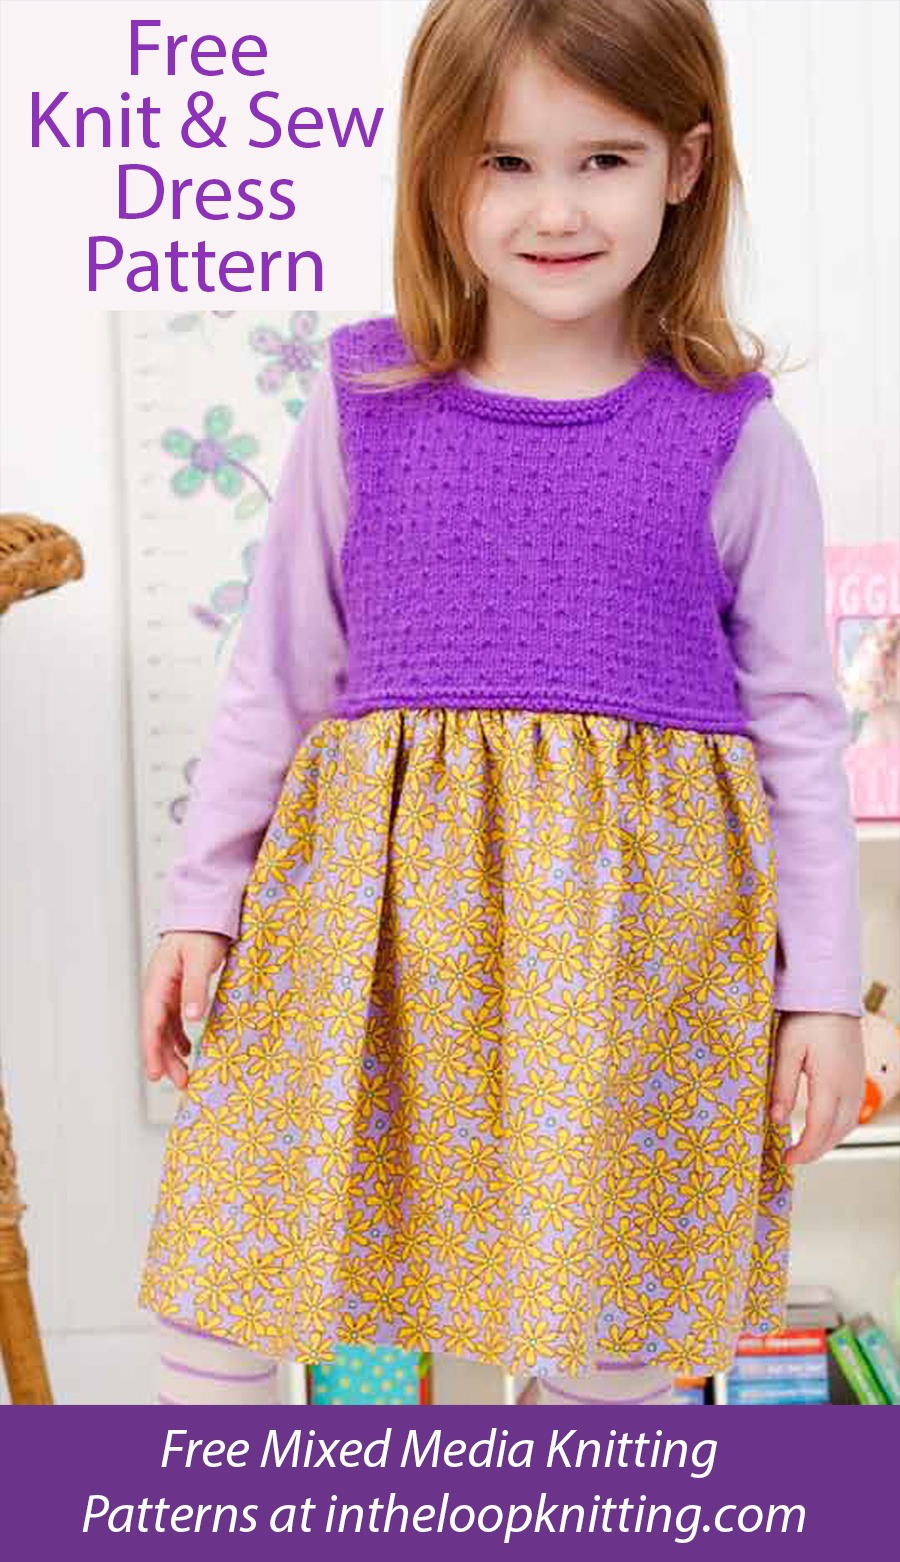 Free Little Princess Dress Knit and Sew Pattern